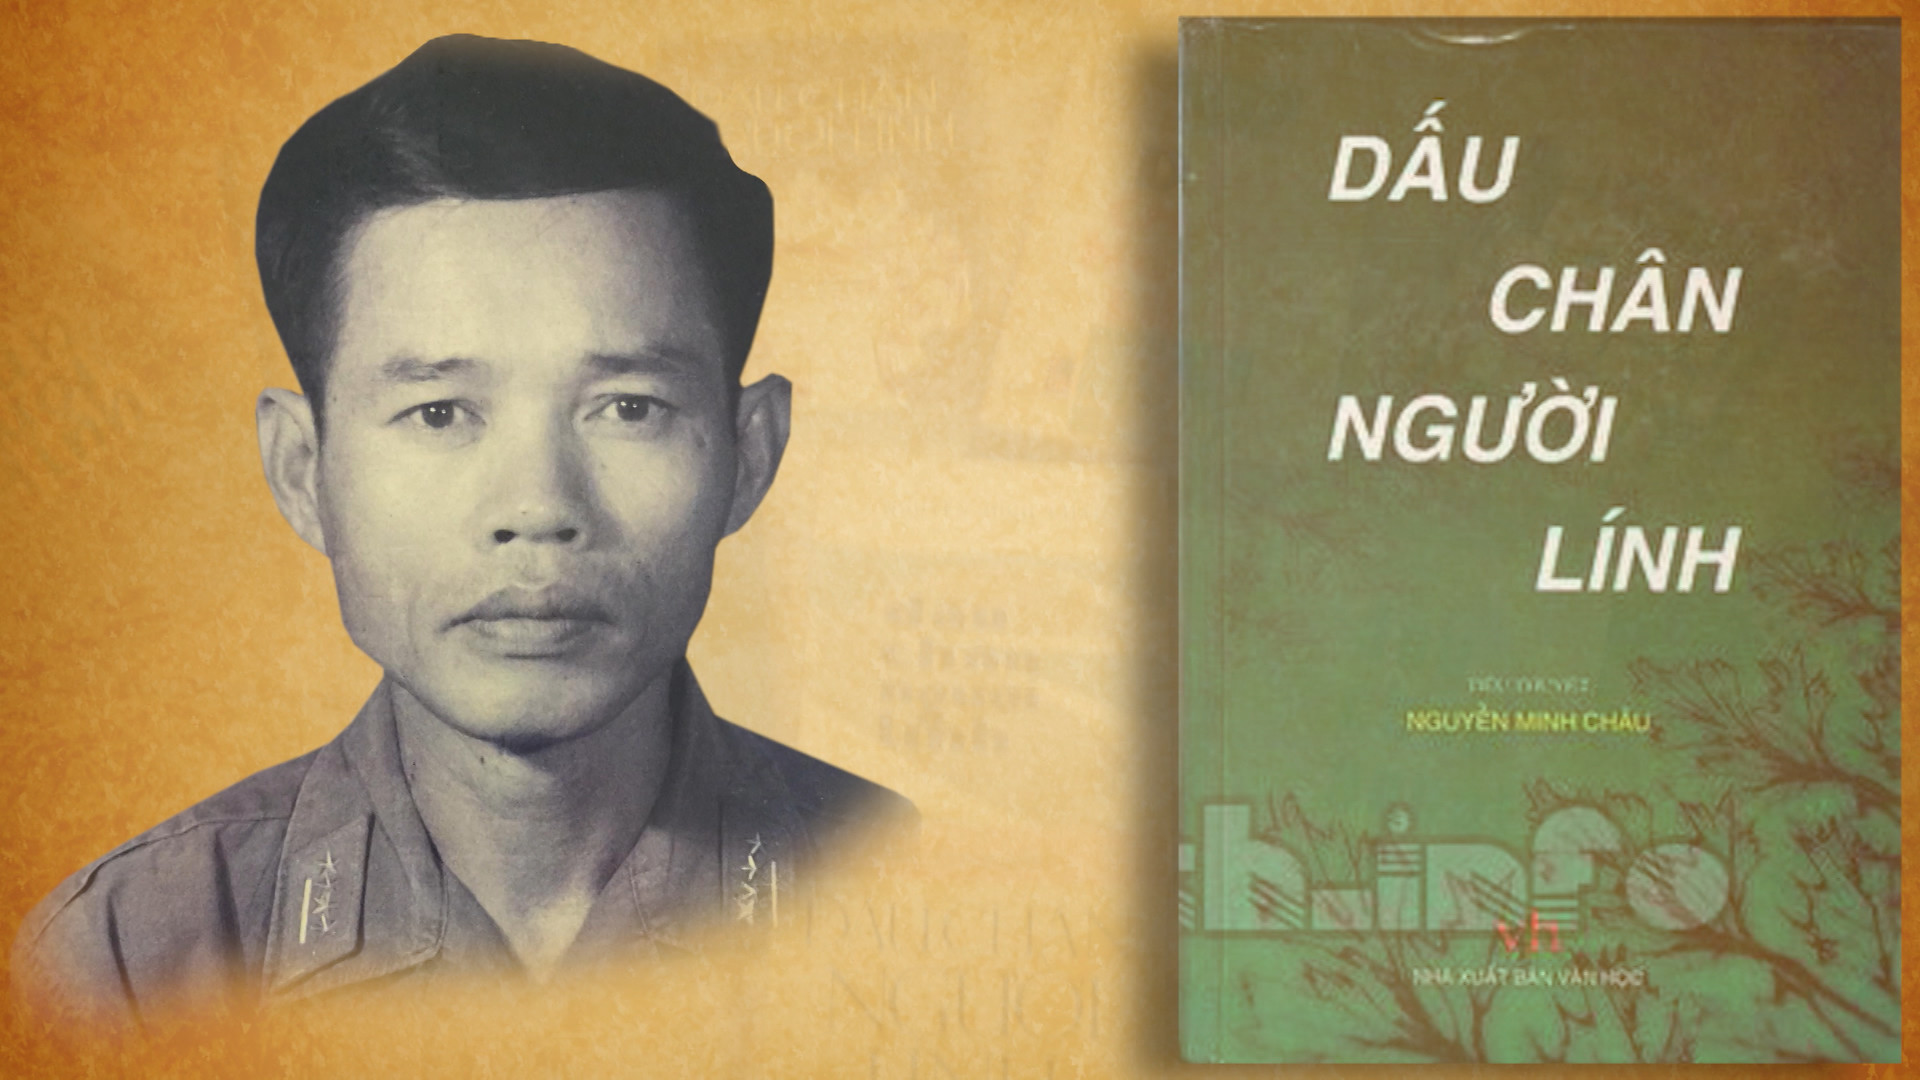 Đọc hiểu Dấu chân người lính - Nguyễn Minh Châu